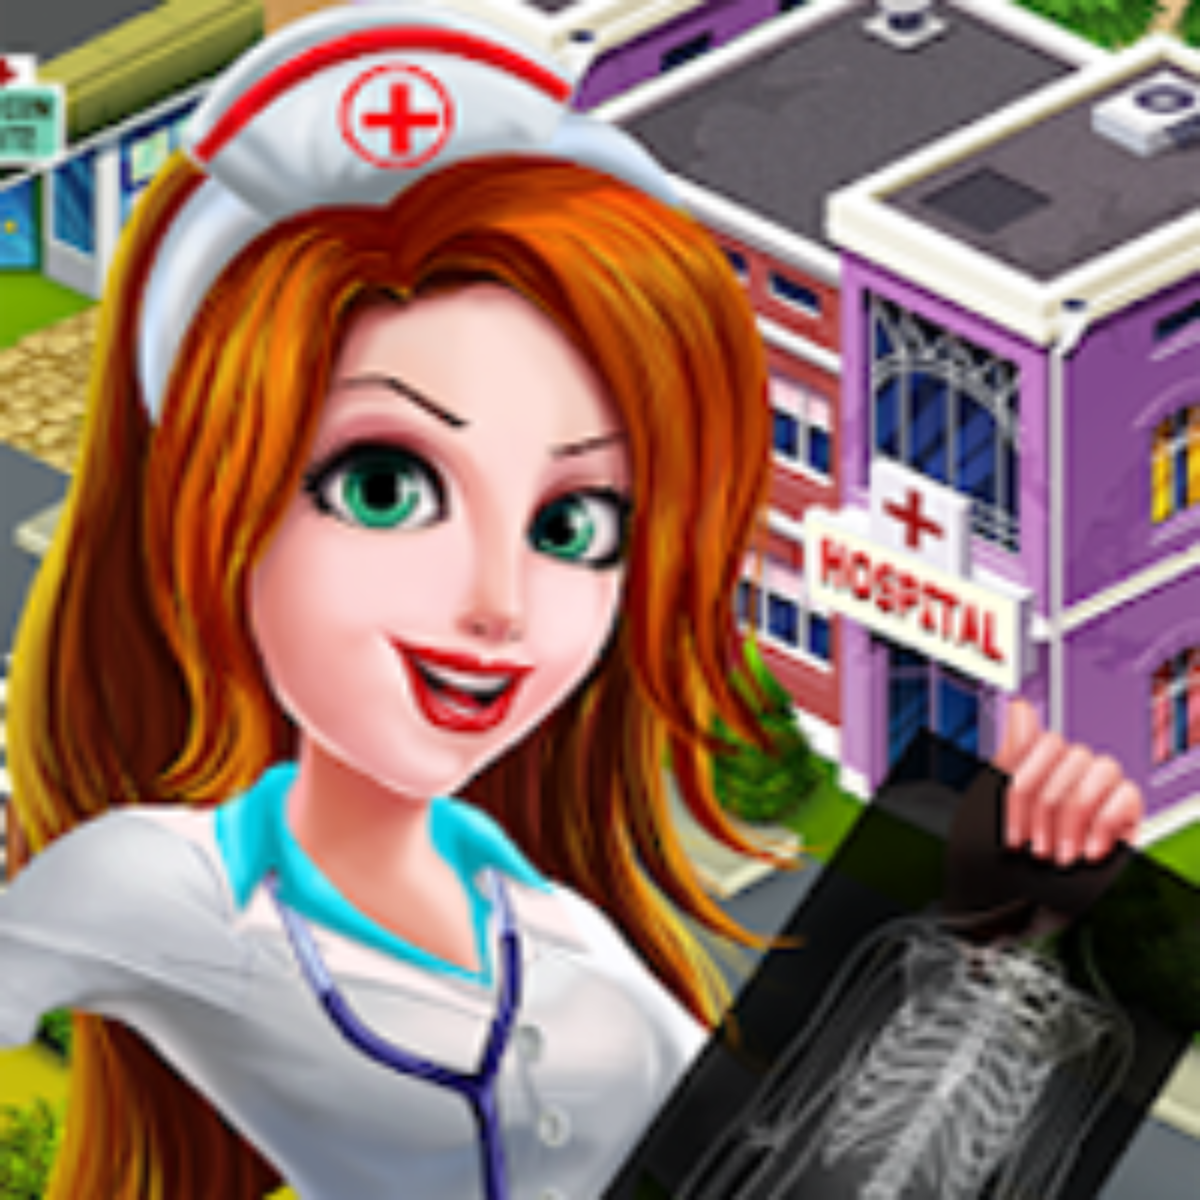 The Sims Mobile Apk Mod v41.0.2.148984 (Dinheiro Infinito